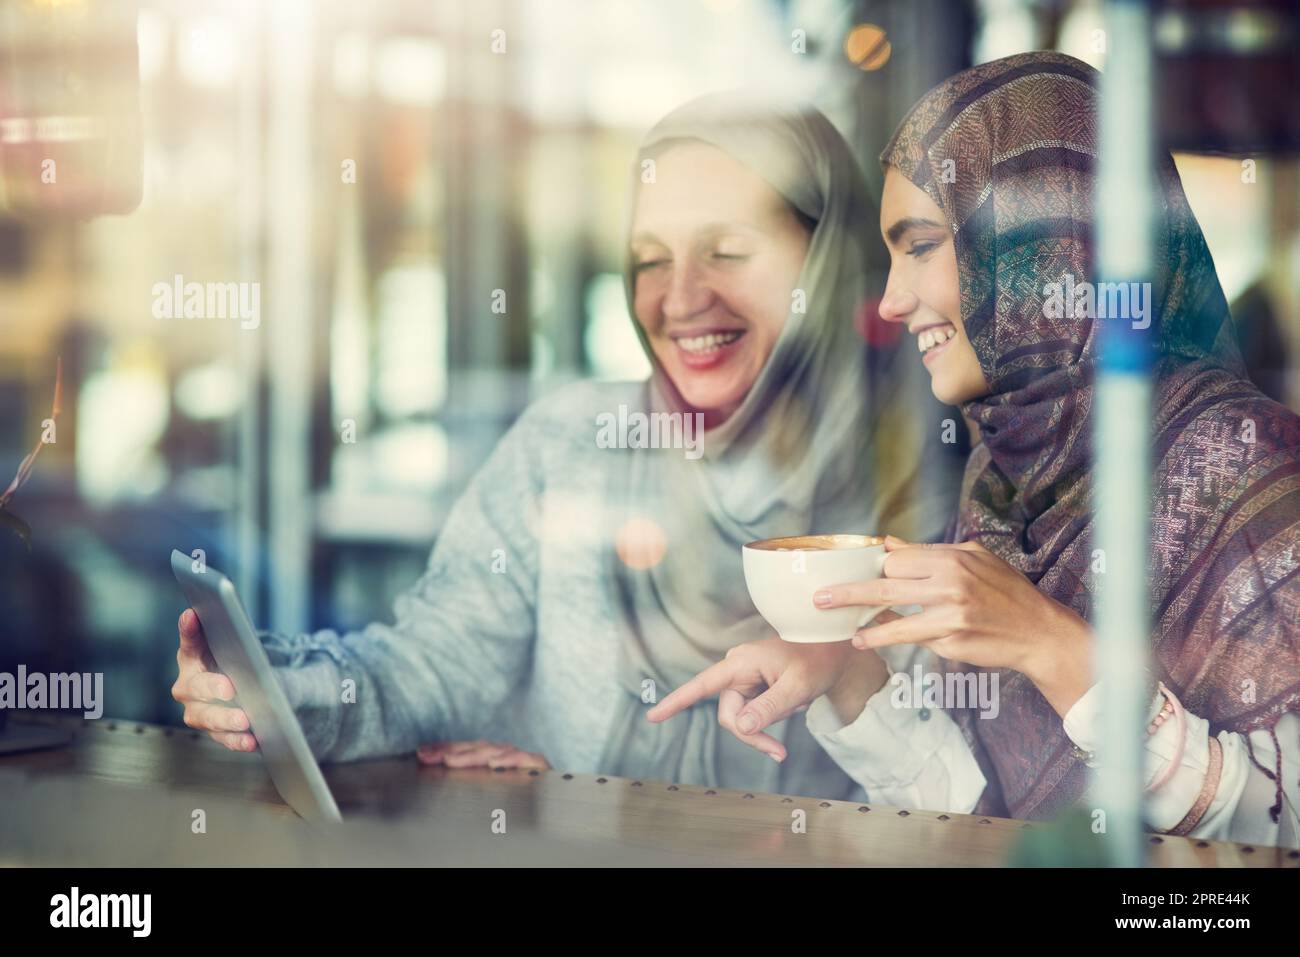 La tecnologia si connette online e nella vita reale. Due donne che utilizzano un tablet digitale insieme in un bar. Foto Stock